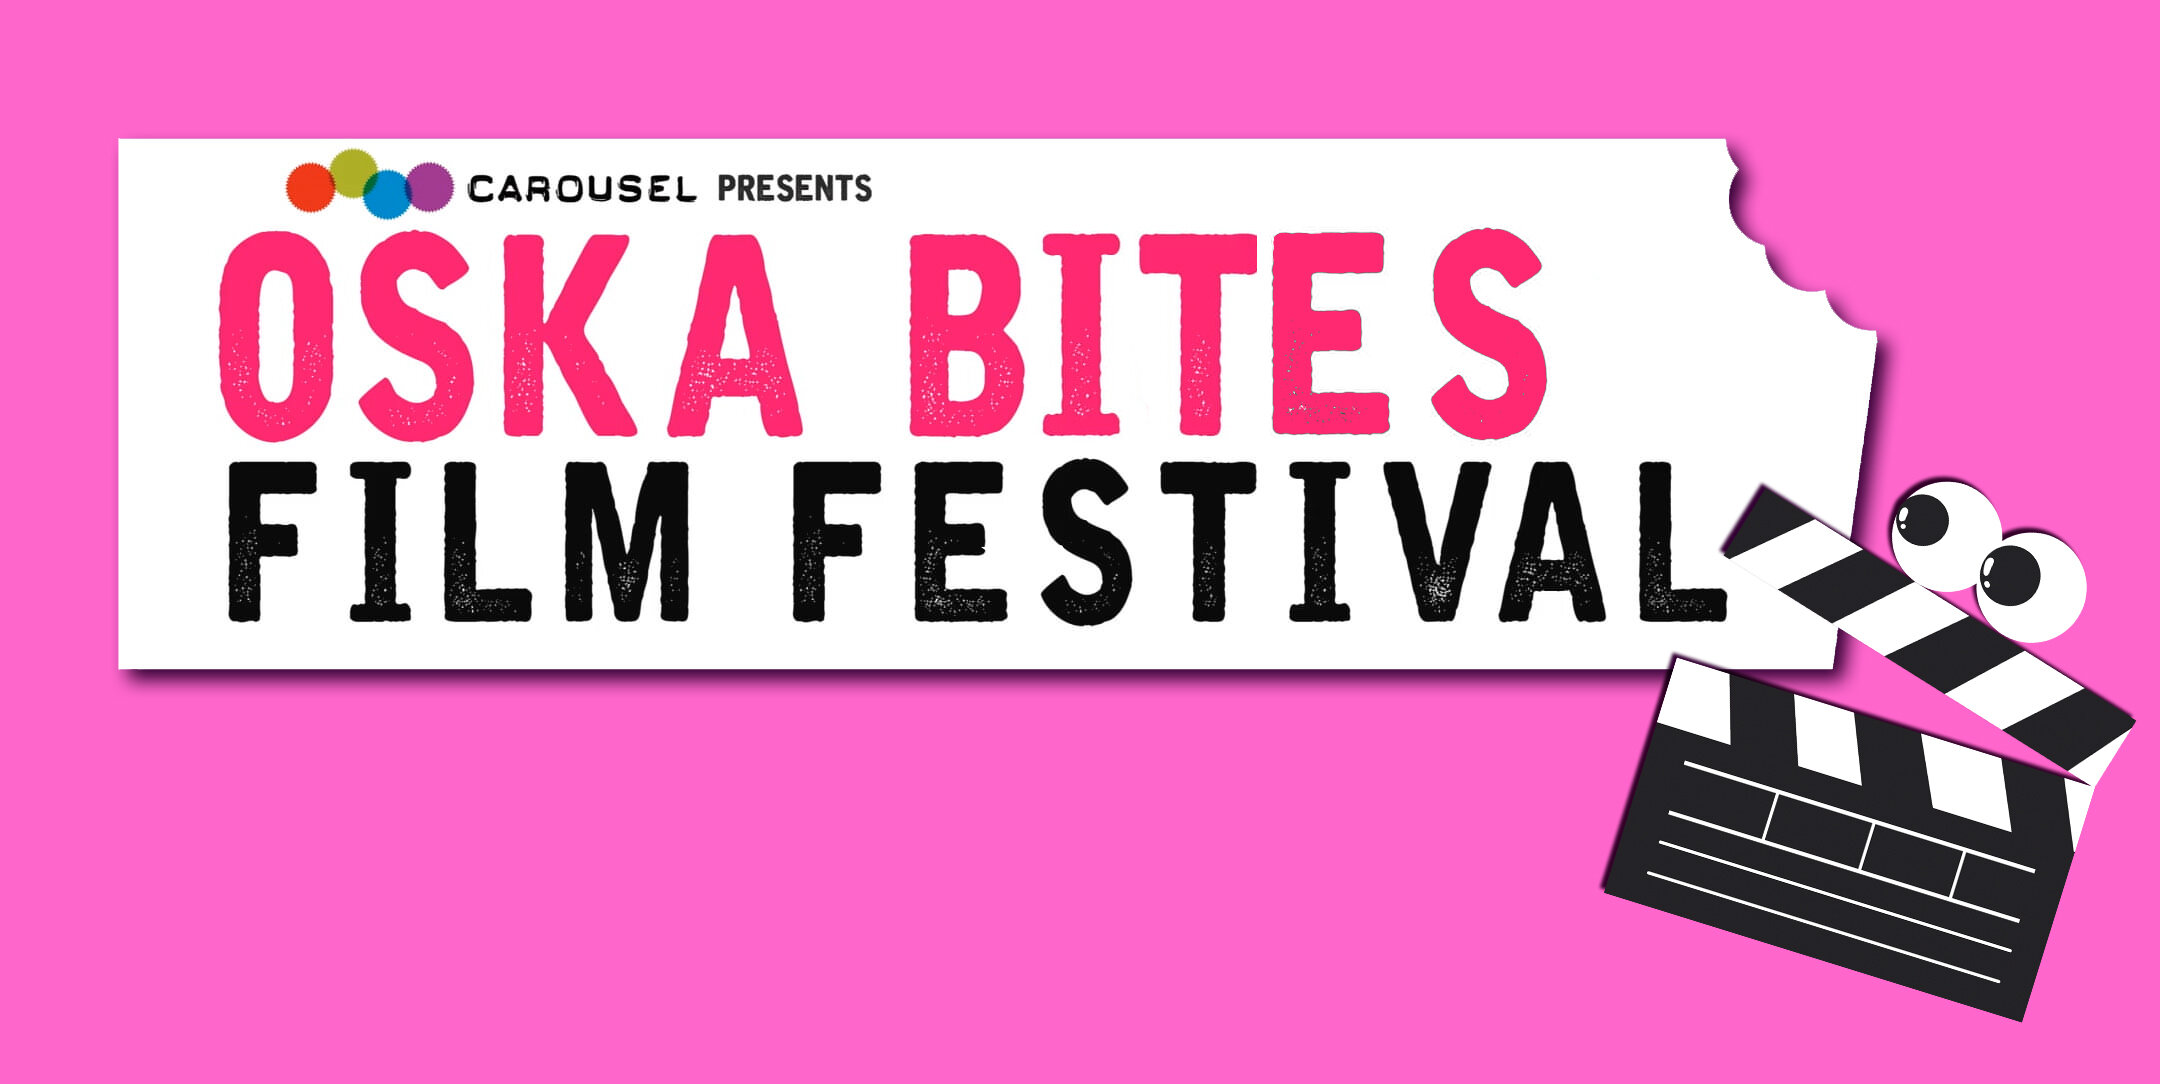 the logo for the Oska Bites films festival